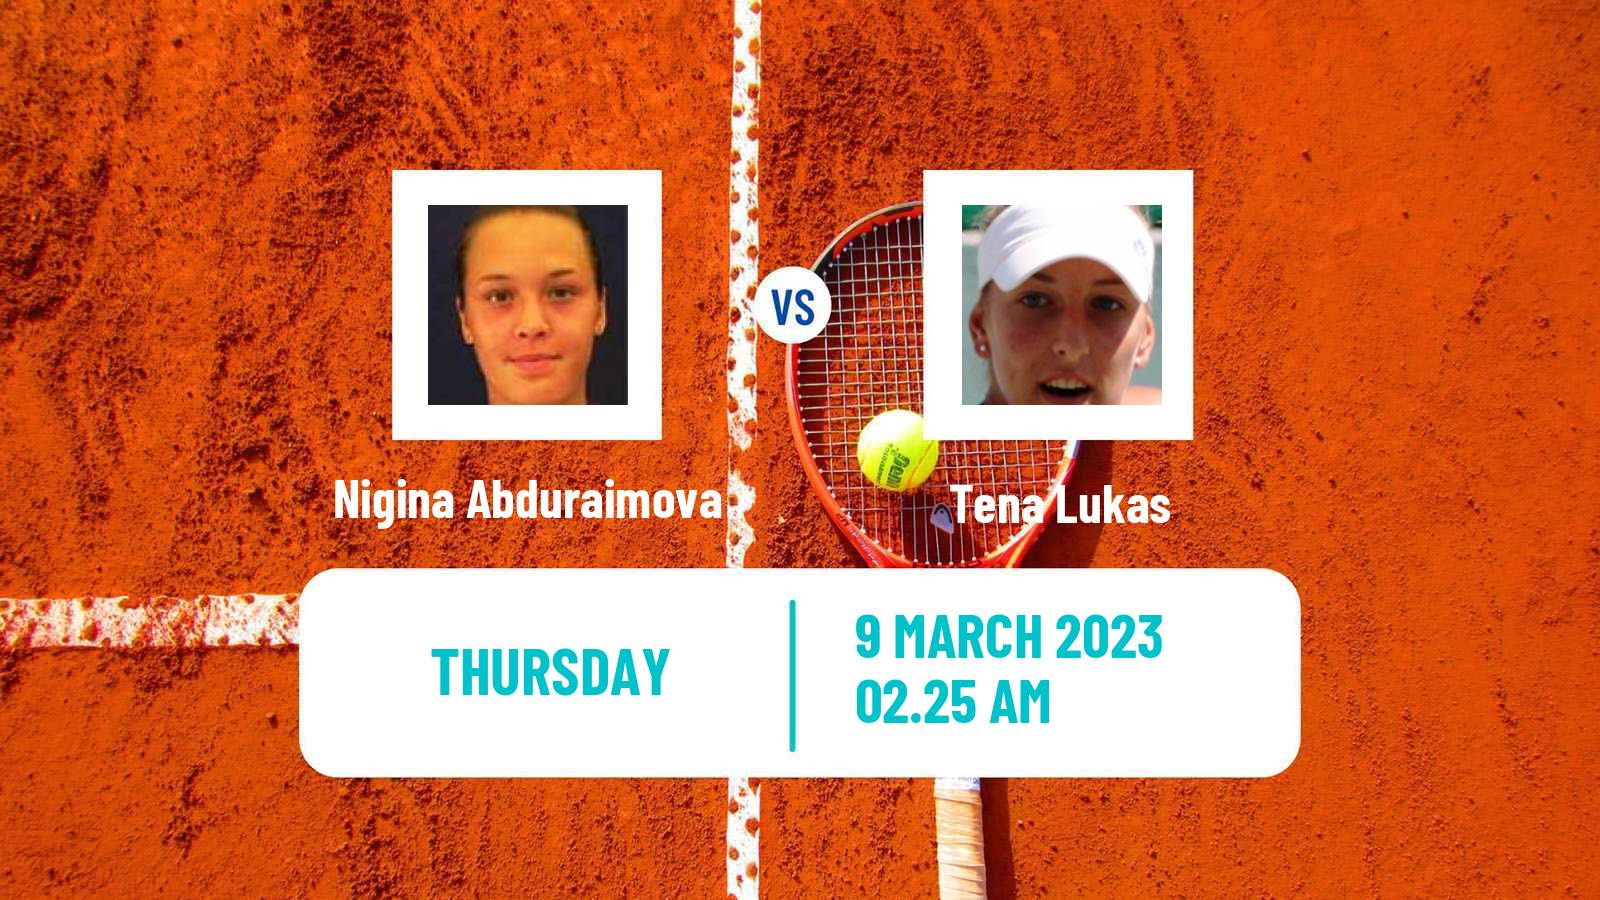 Tennis ITF Tournaments Nigina Abduraimova - Tena Lukas